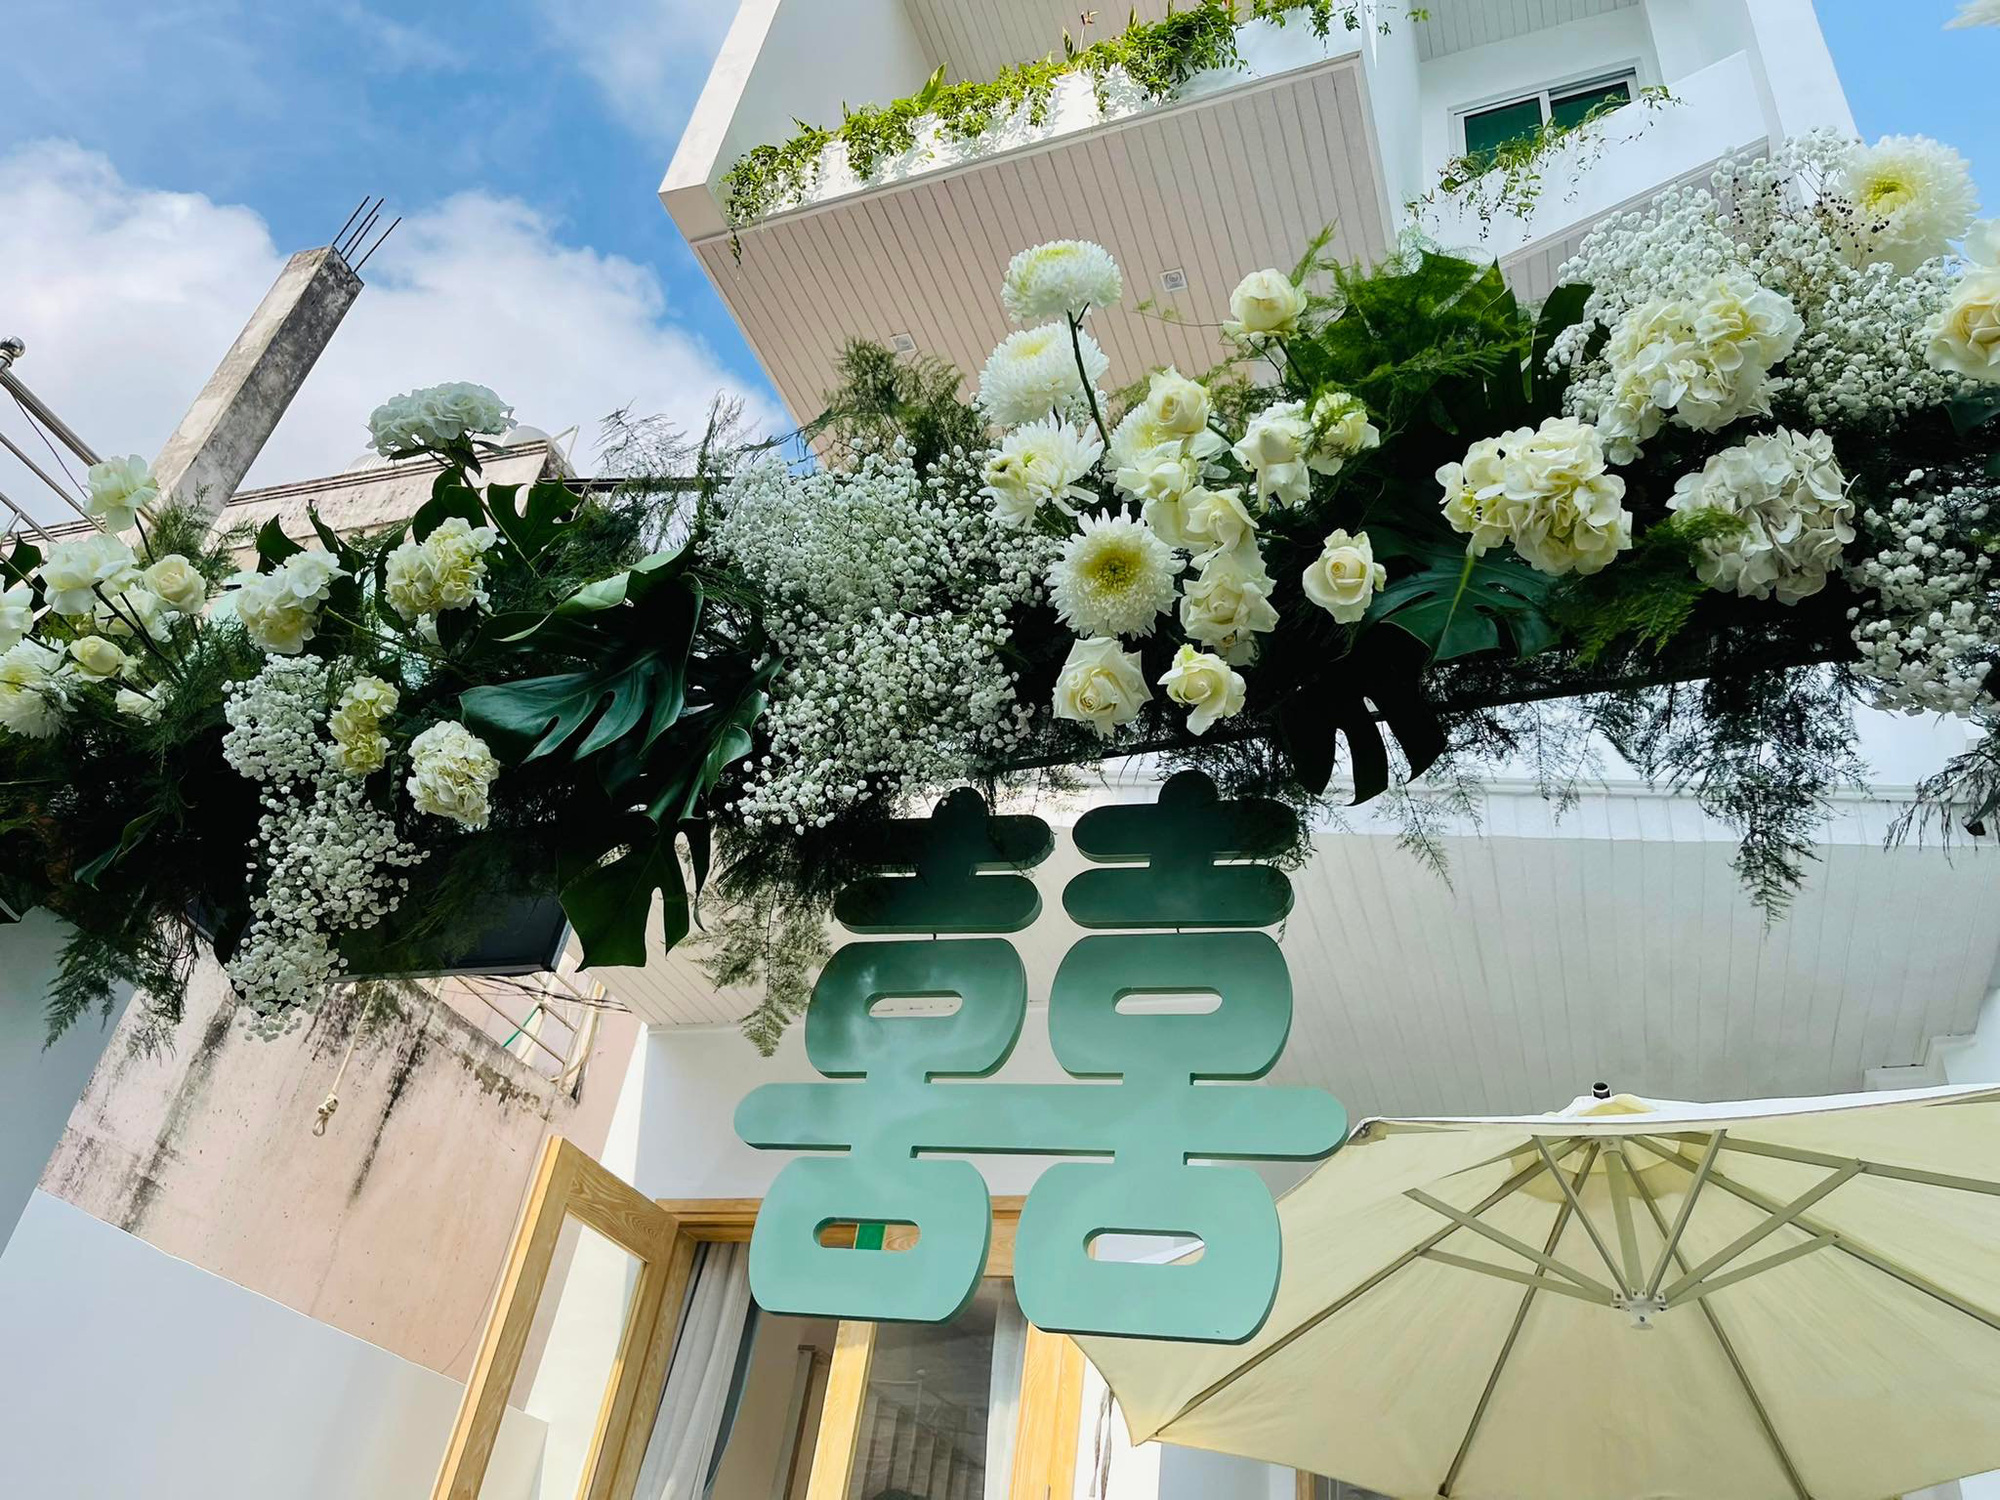 Đám cưới Phương Trinh Jolie - Lý Bình: Nhà riêng trang hoàng đầy hoa tươi, tông màu cưới xanh mint quá xinh - Ảnh 4.